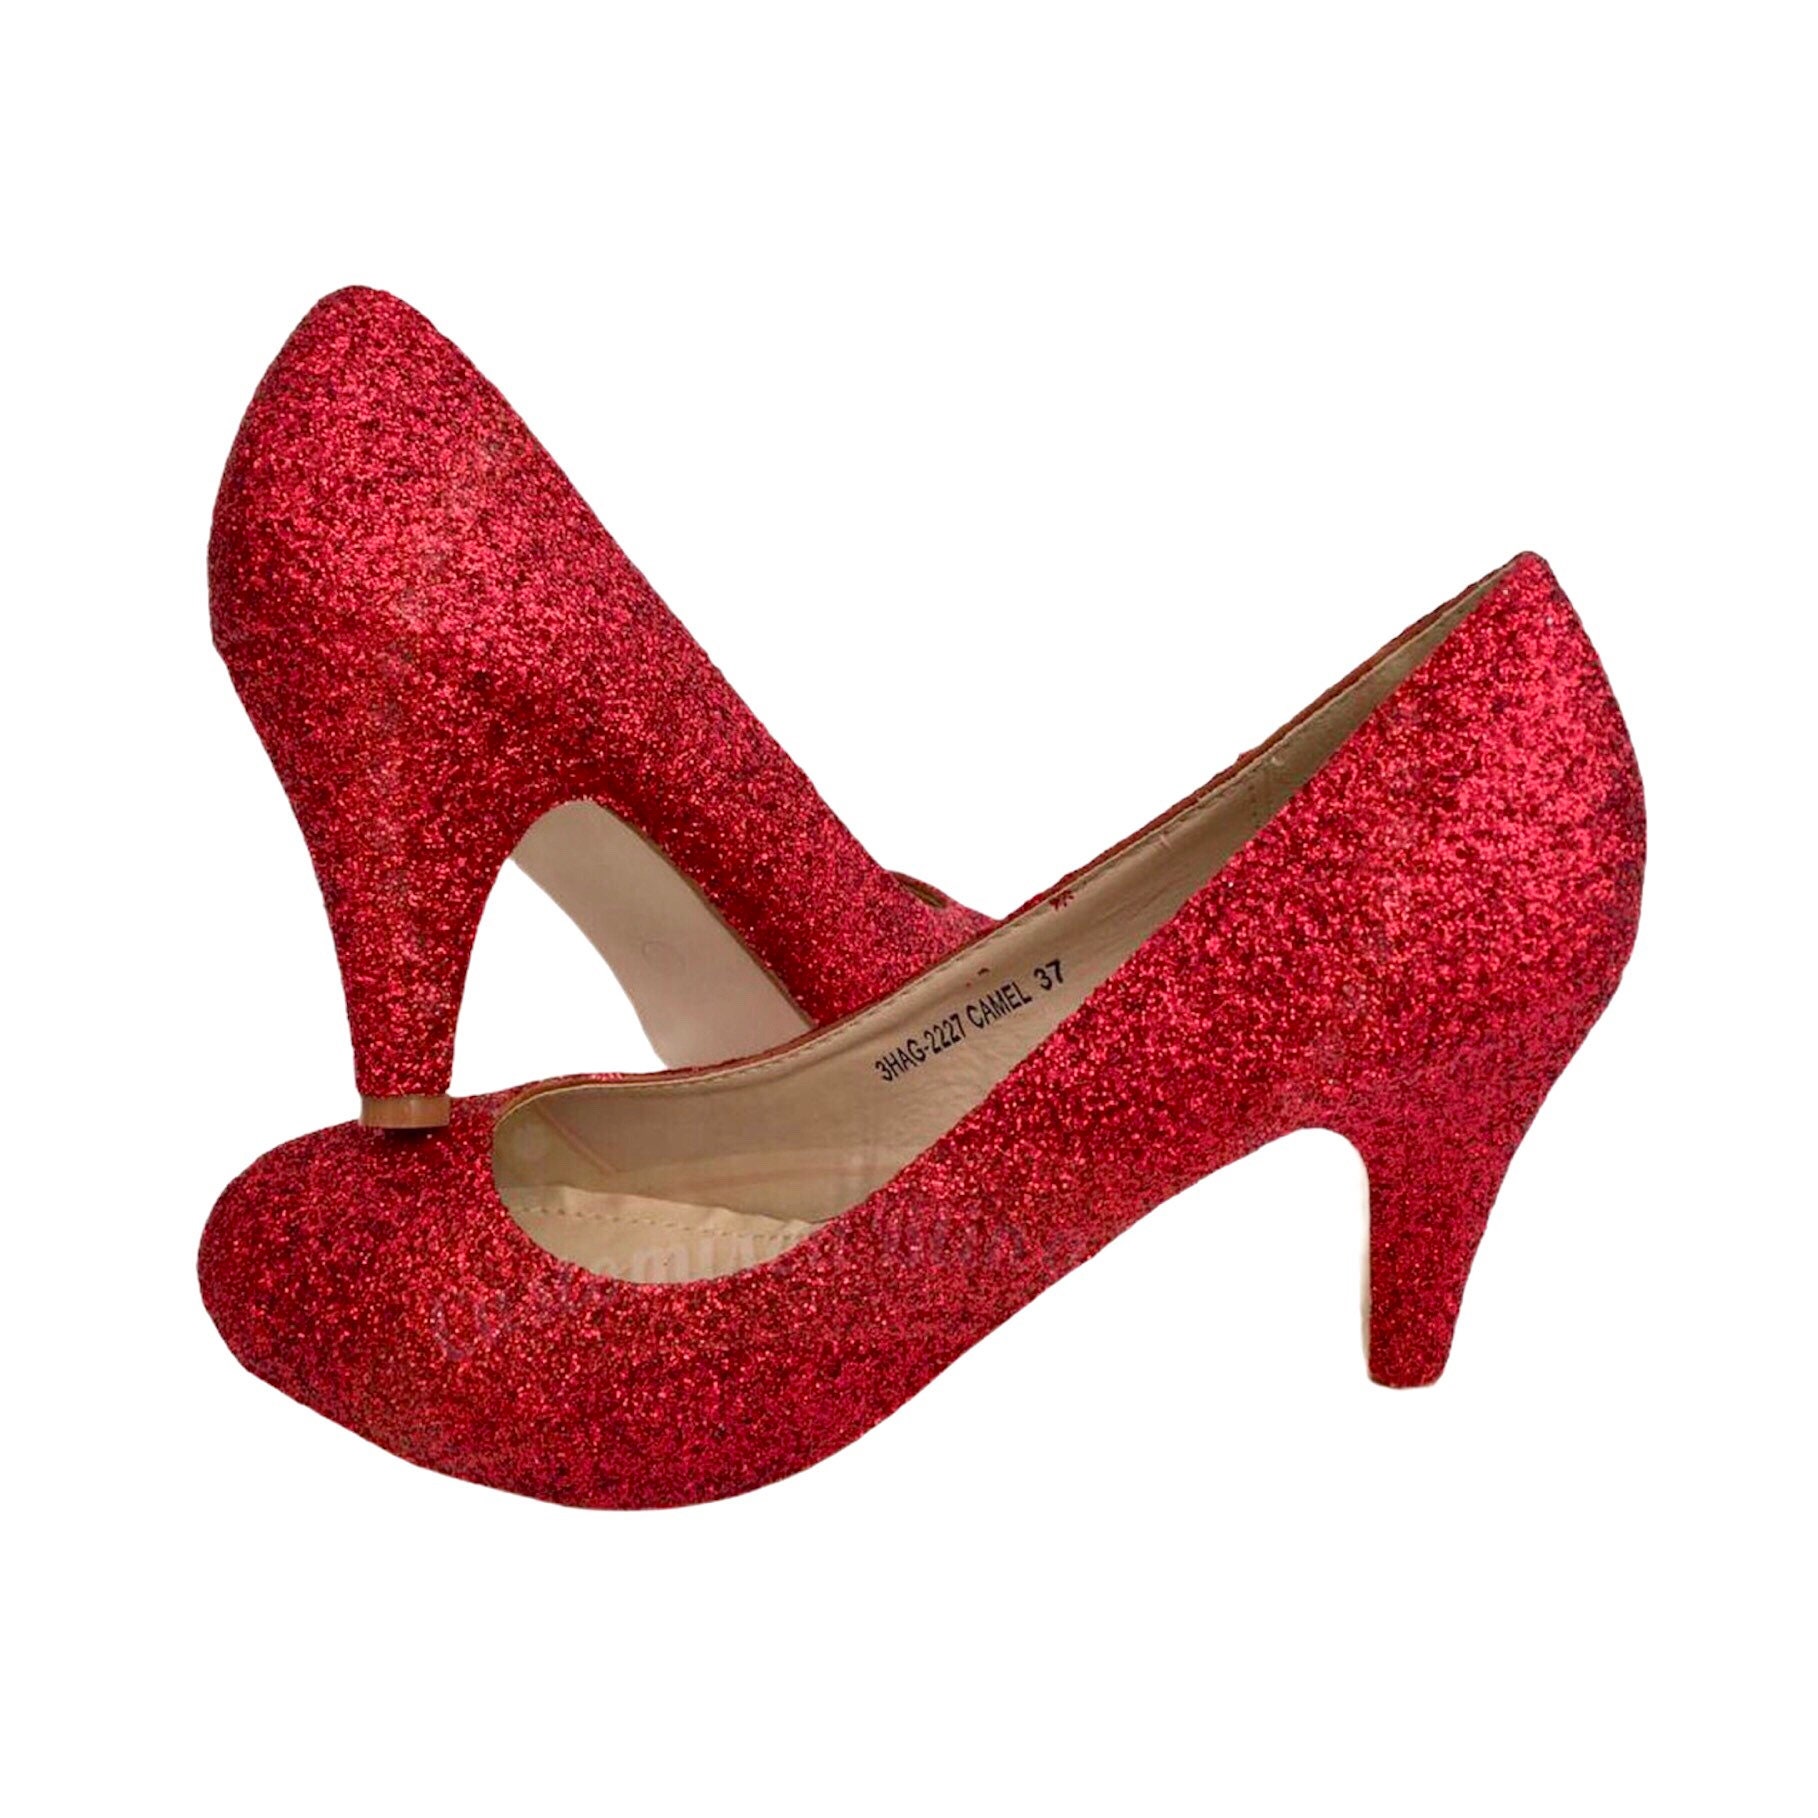 Women's Red Glitter Pumps - Walmart.com